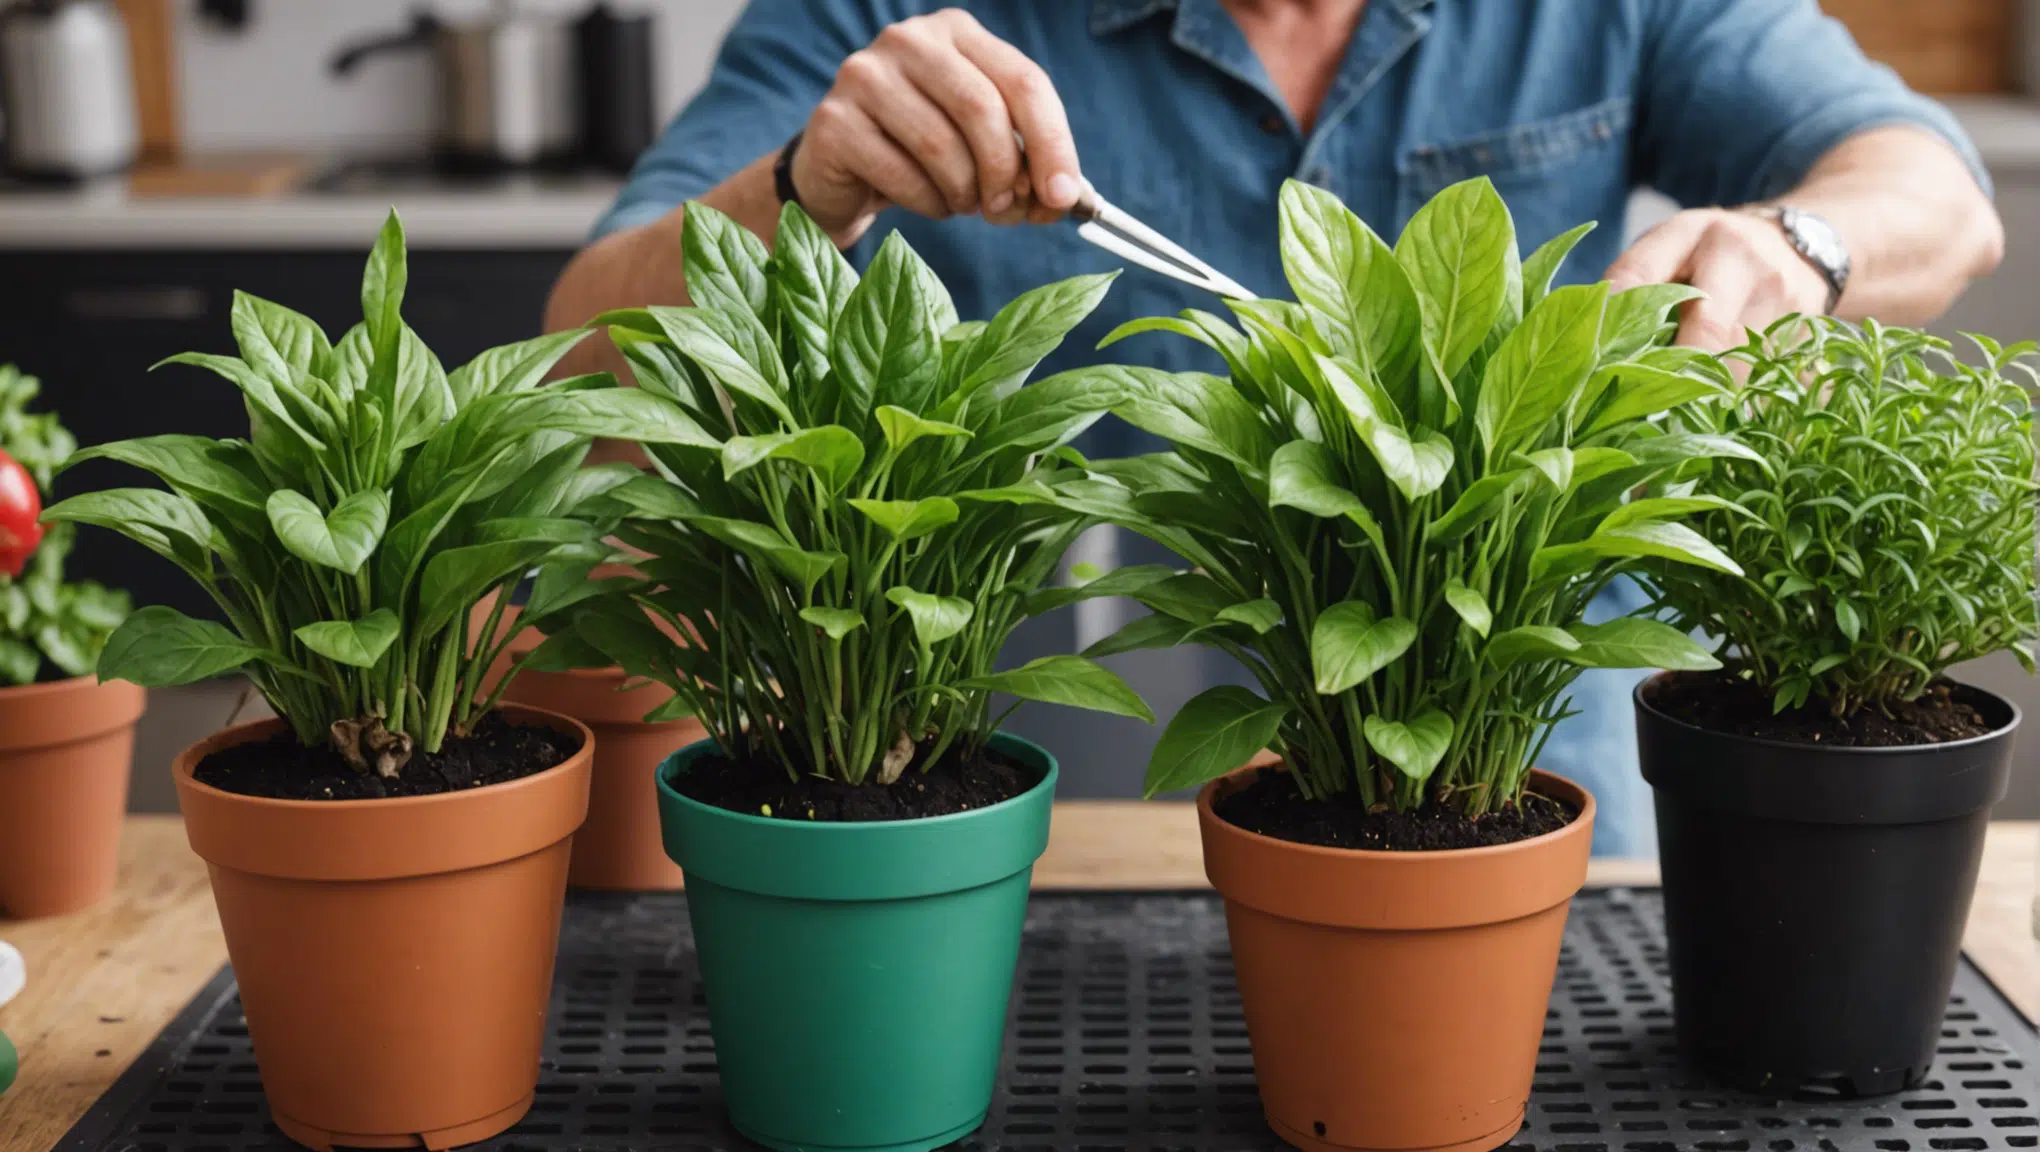 découvrez les techniques pour multiplier vos plantes par bouturage de façon efficace et simple grâce à nos conseils pratiques.